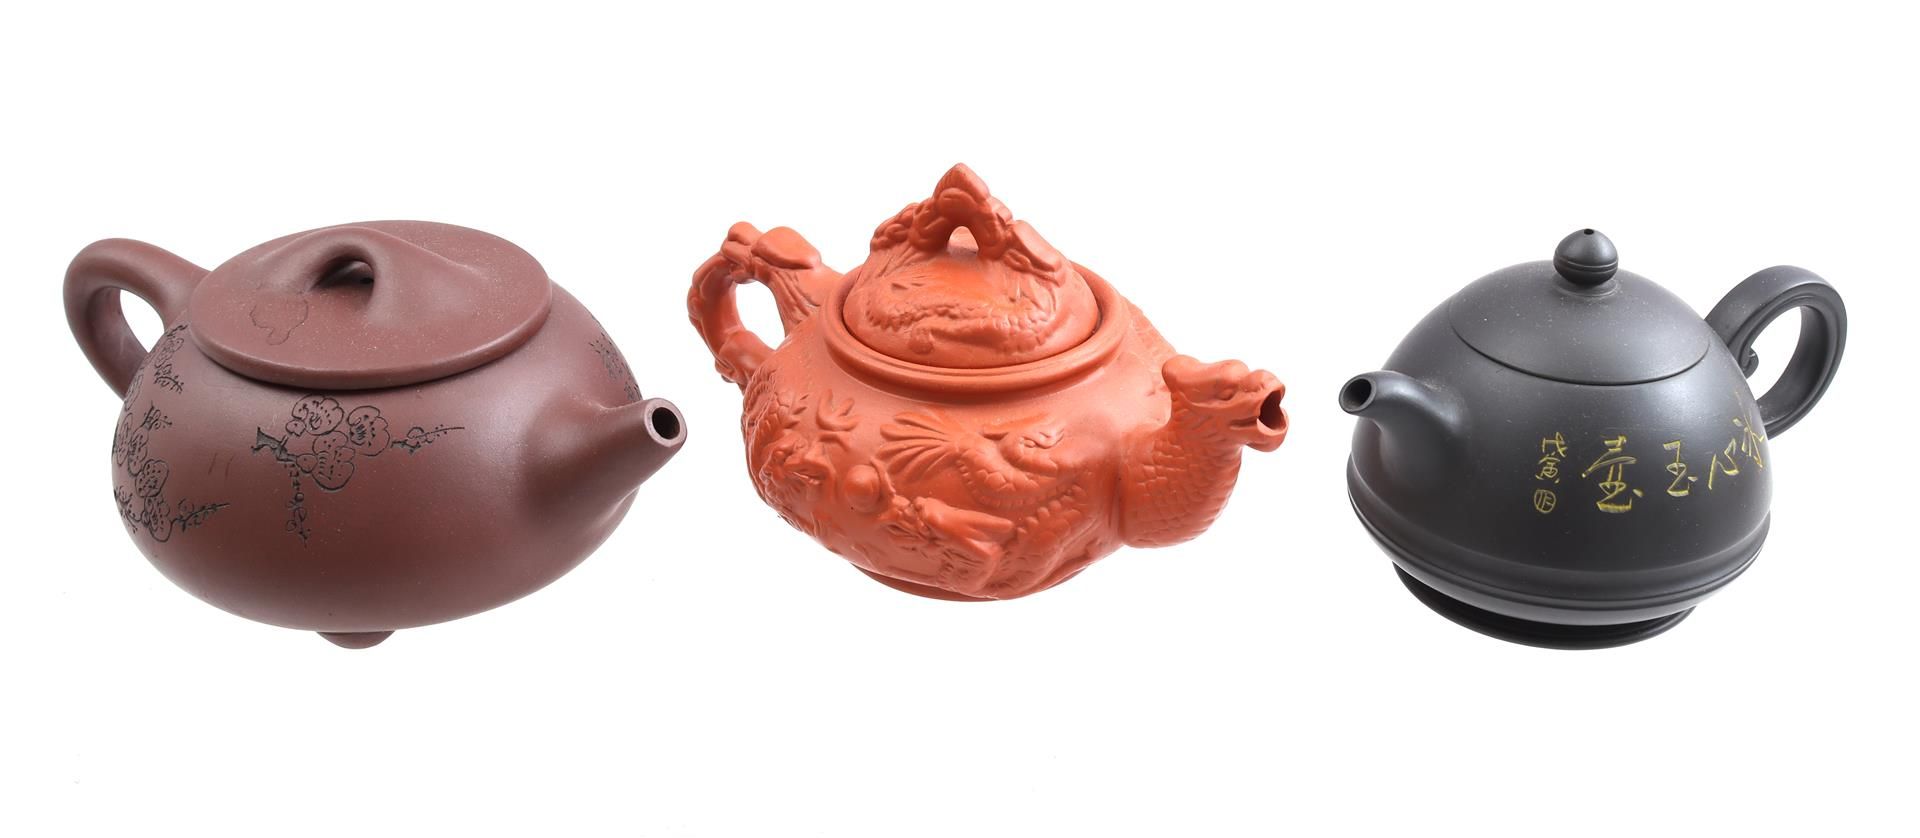 3 Yixing earthenware teapots, China 21th